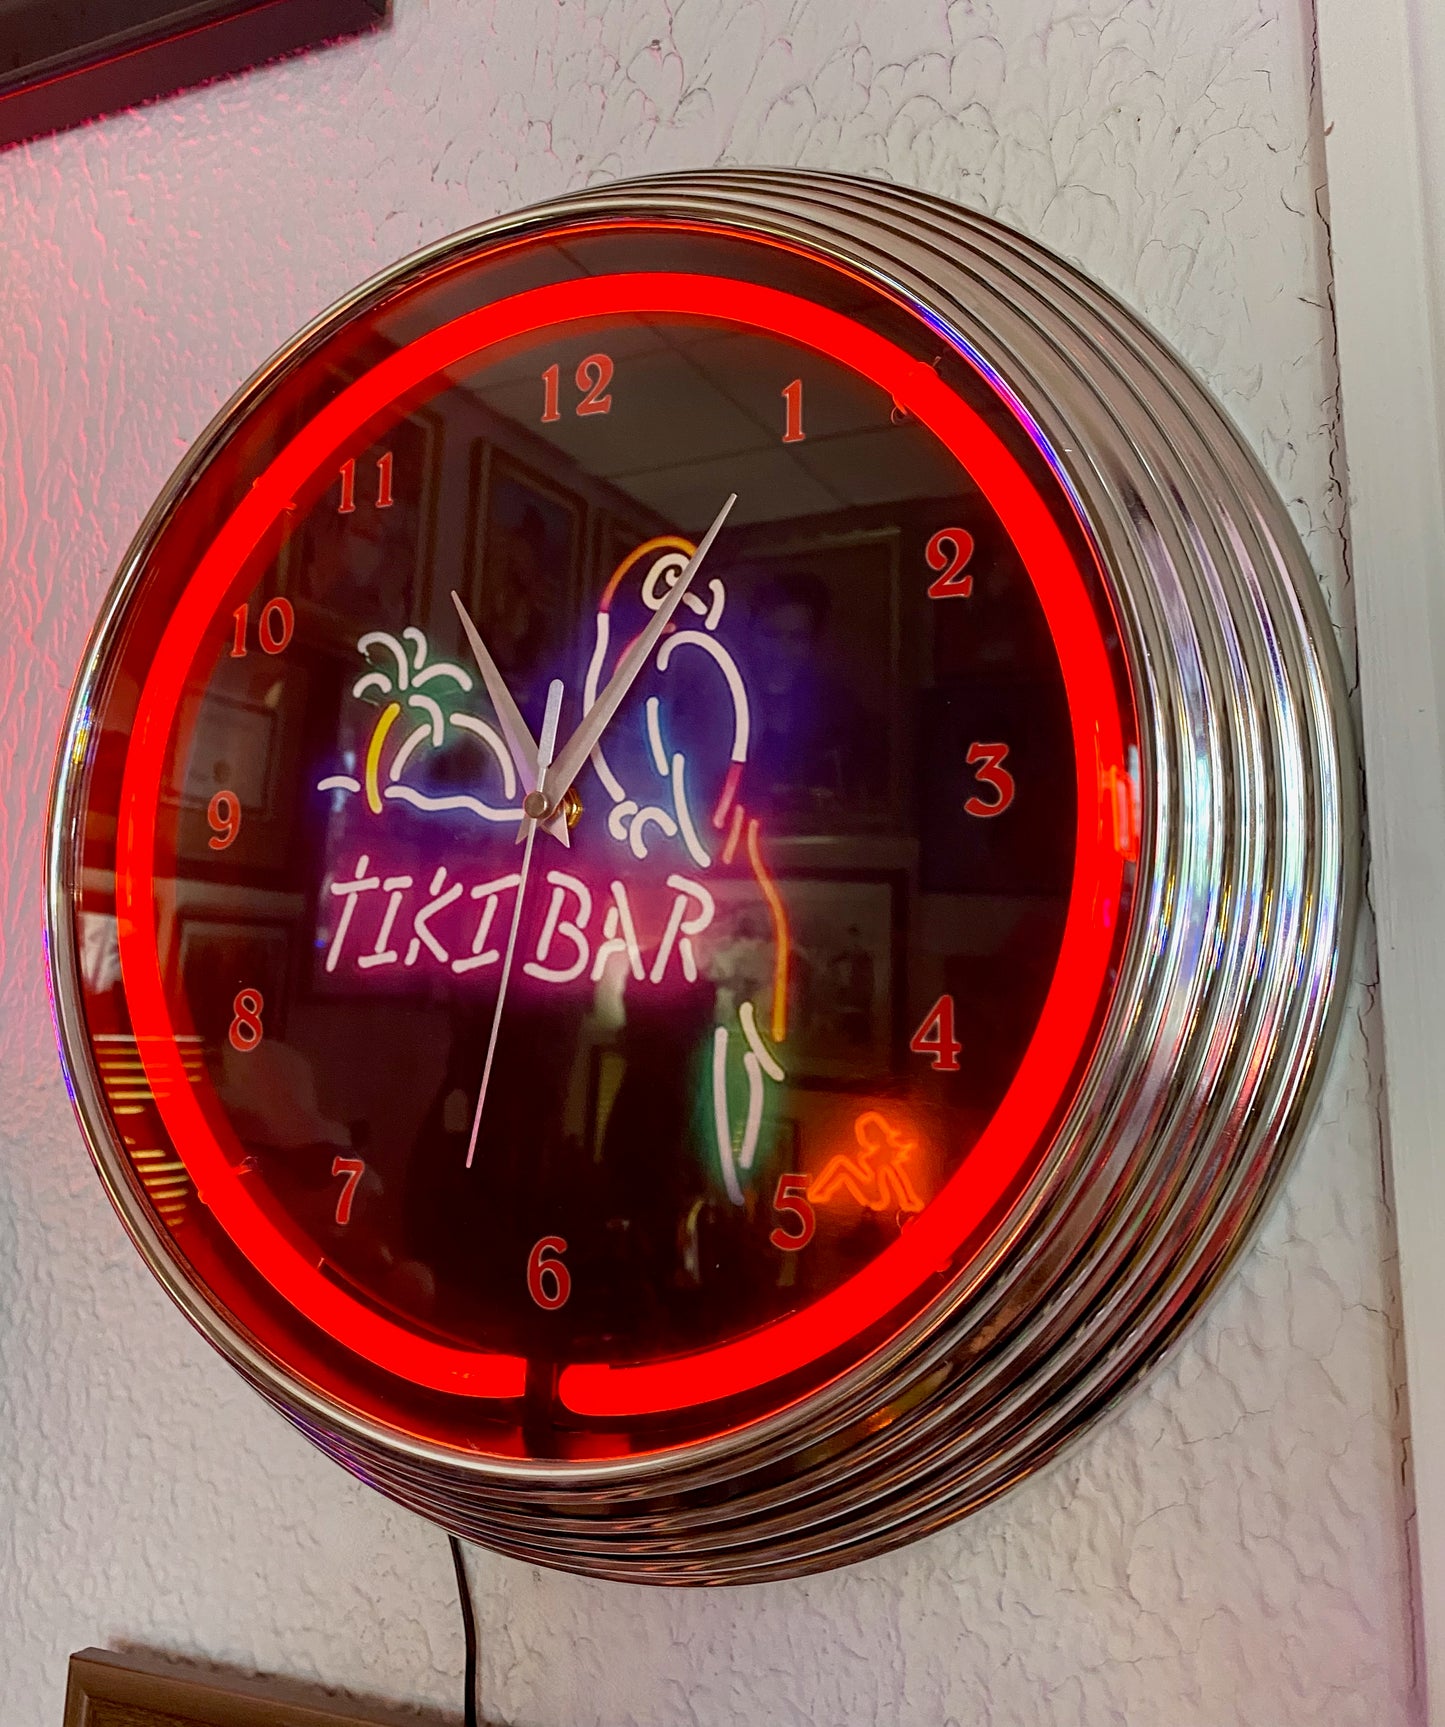 Tiki Bar Neon Clock